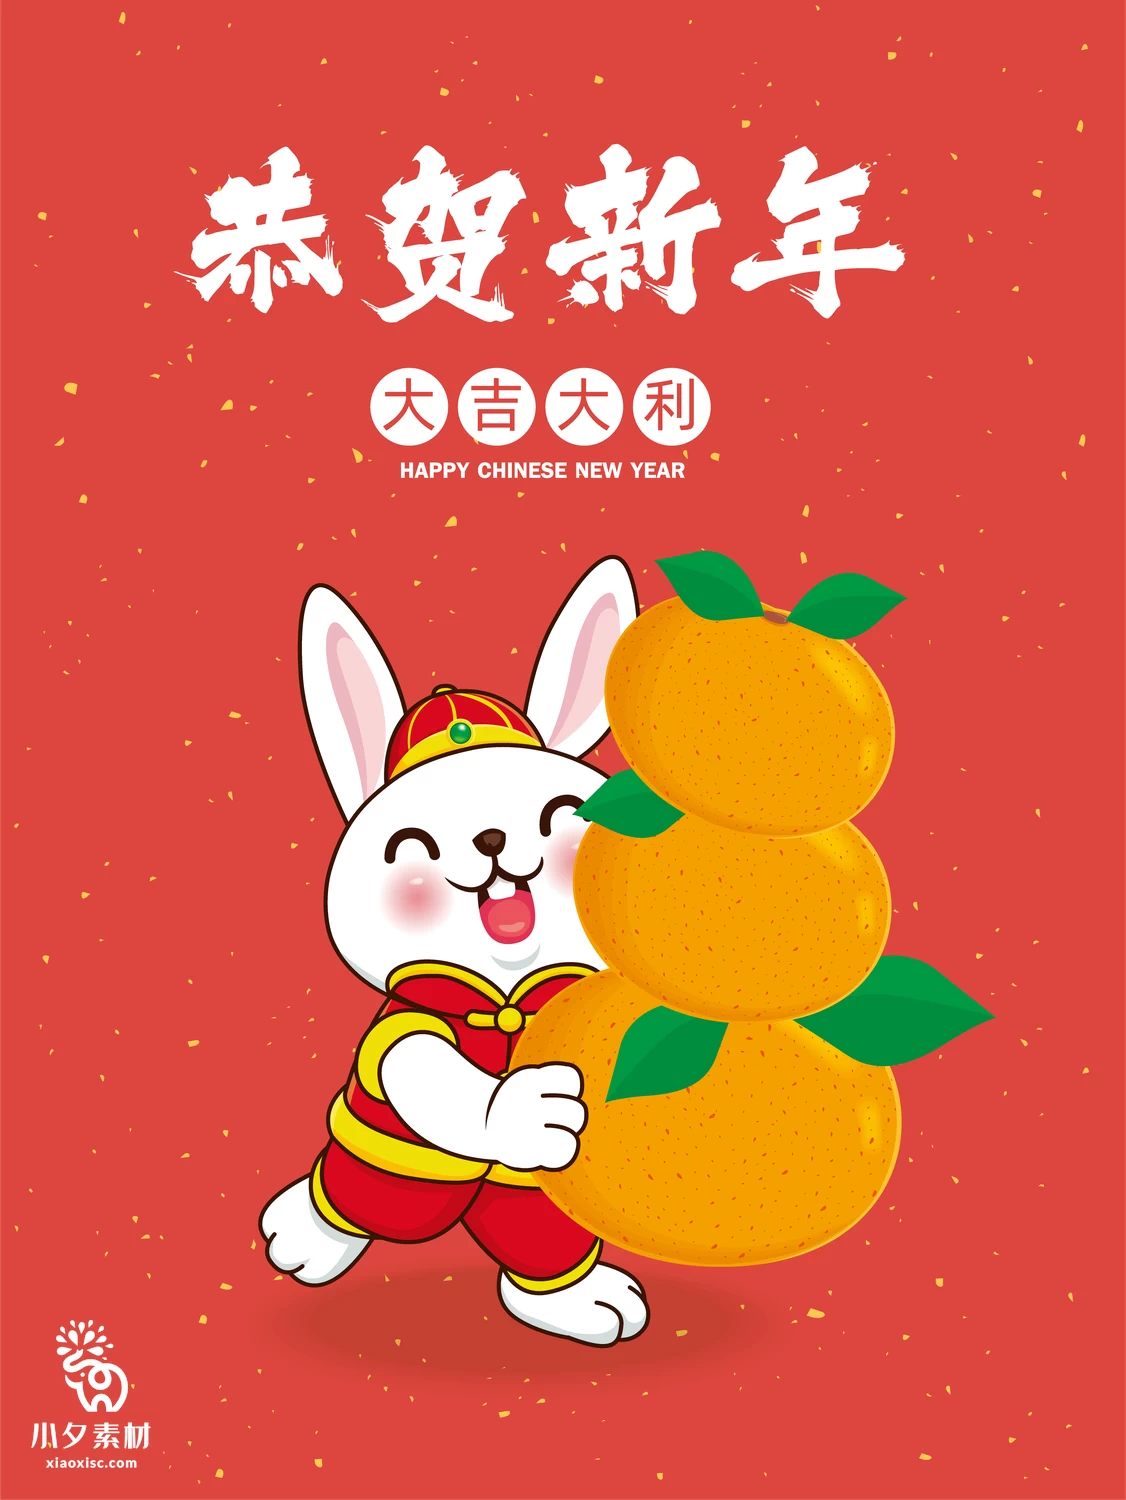 2023年兔年恭贺新春新年快乐喜庆节日宣传海报图片AI矢量设计素材【003】